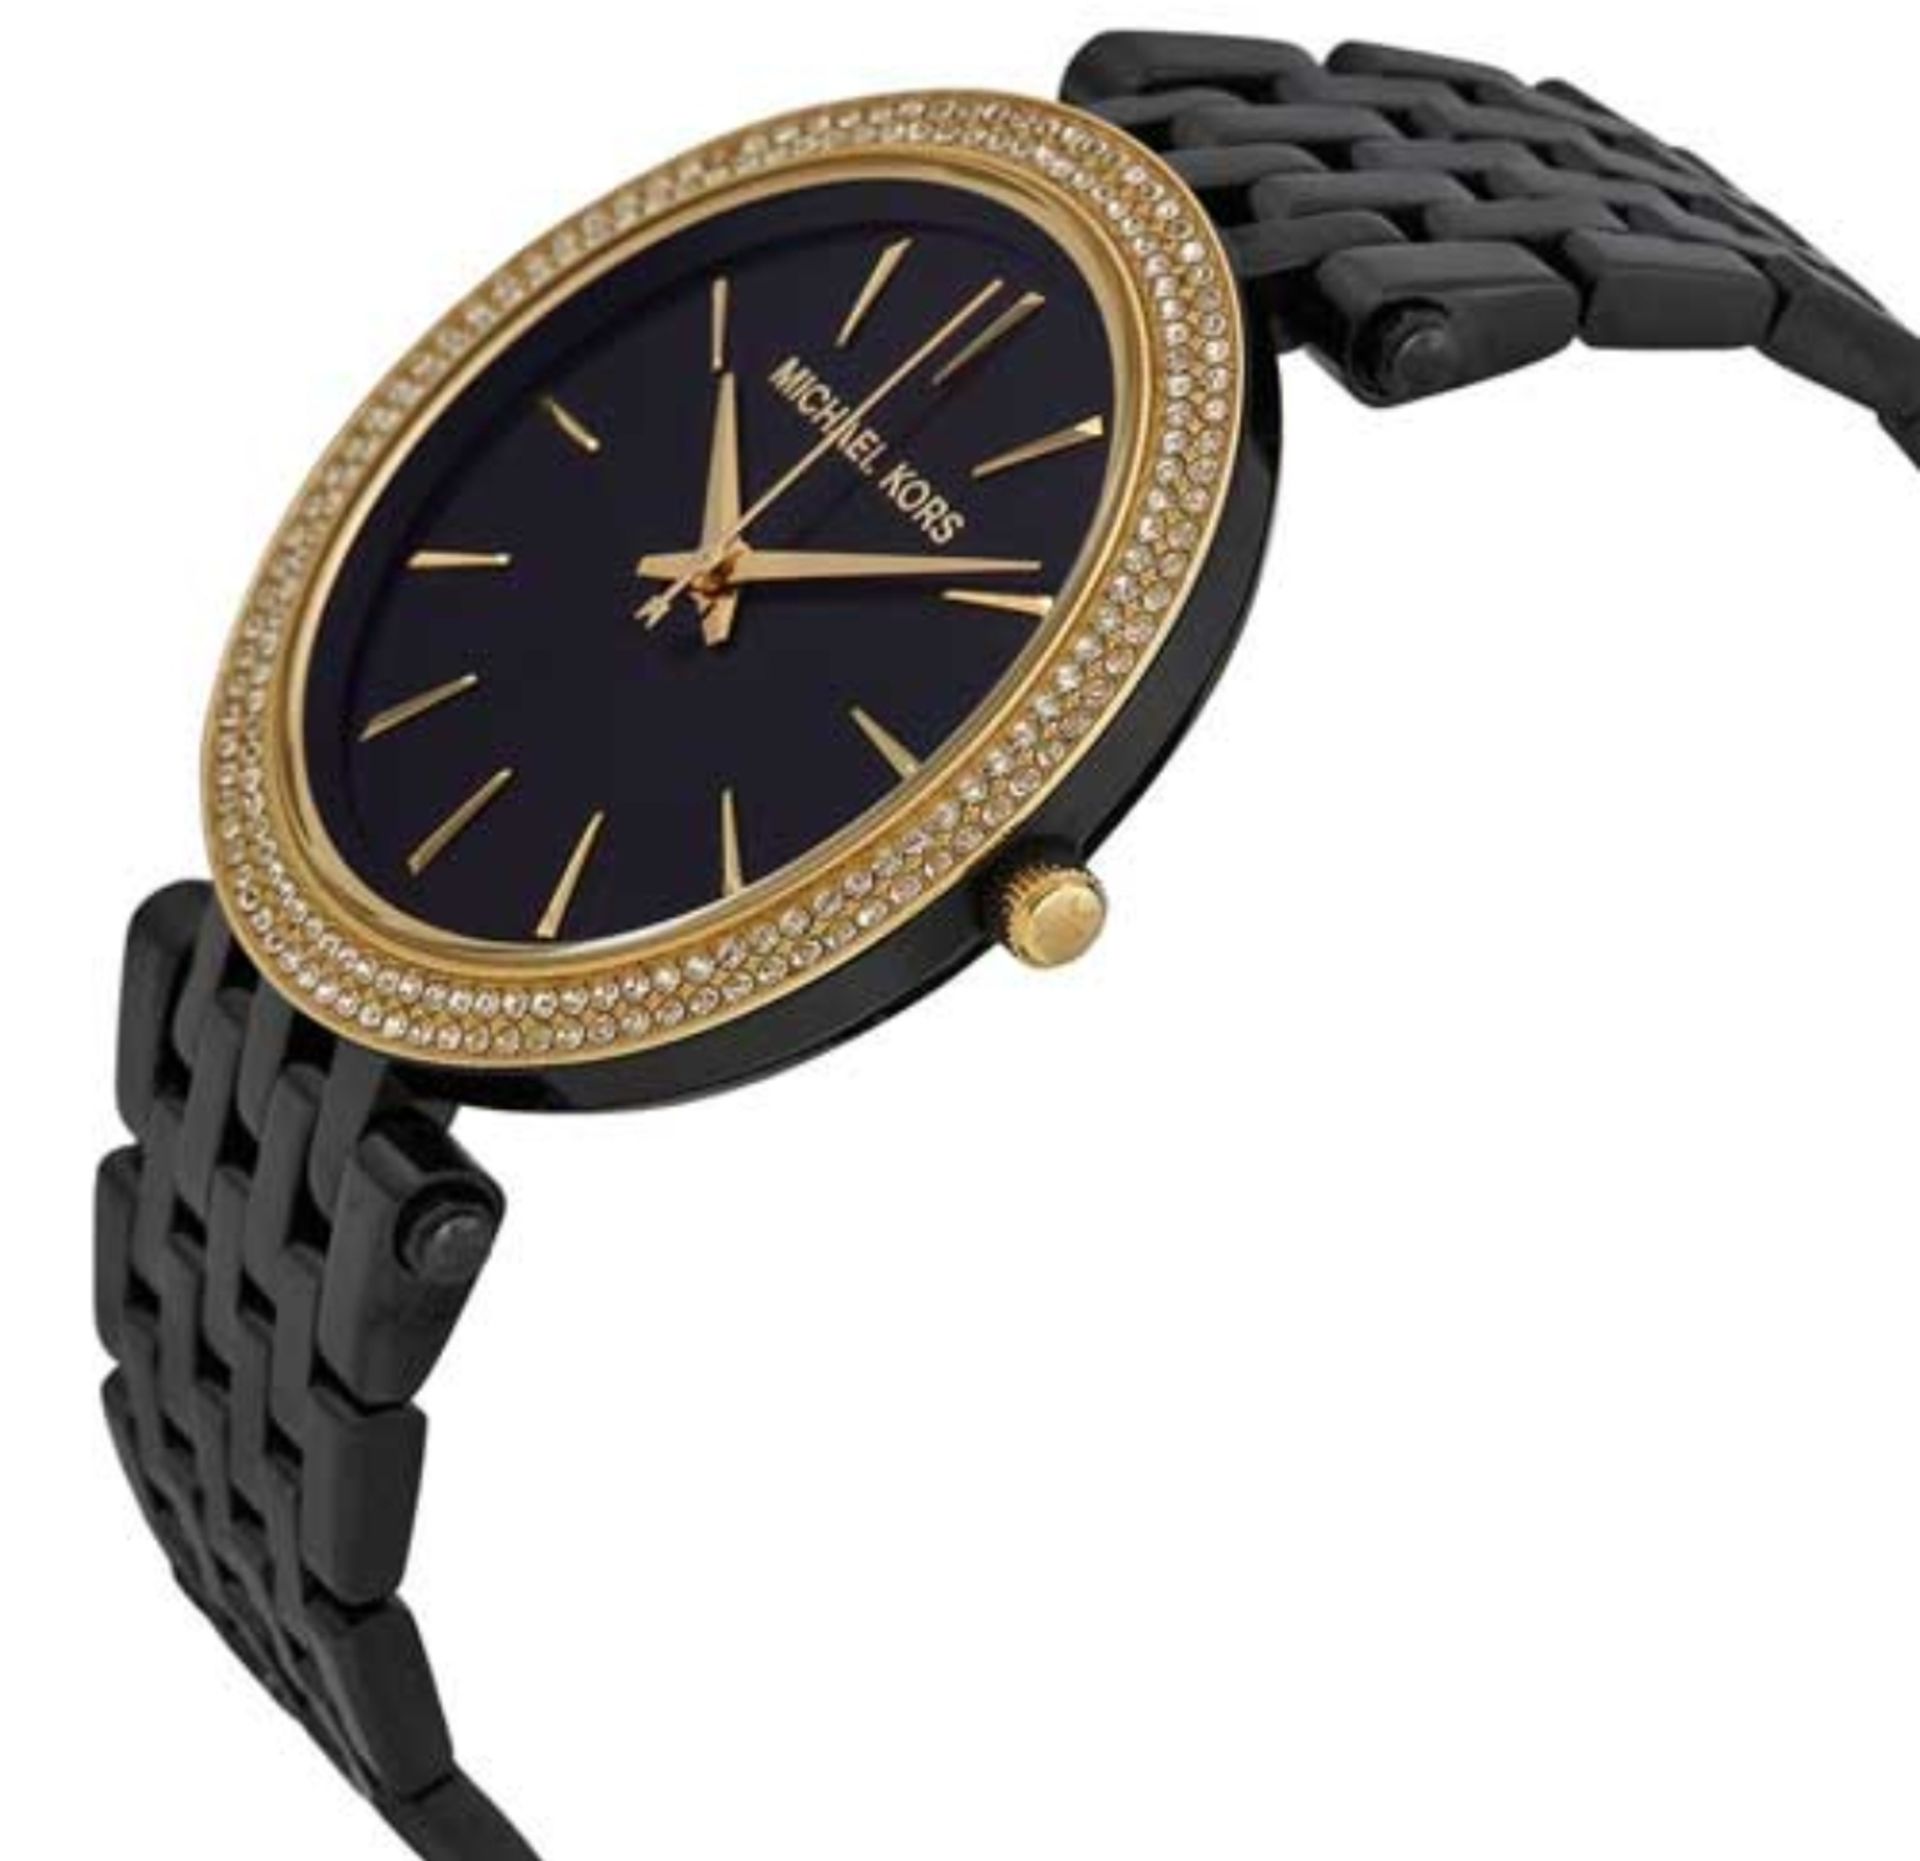 Michael Kors MK3322 Darci Gold & Black Stainless Steel Ladies Watch - Image 7 of 8